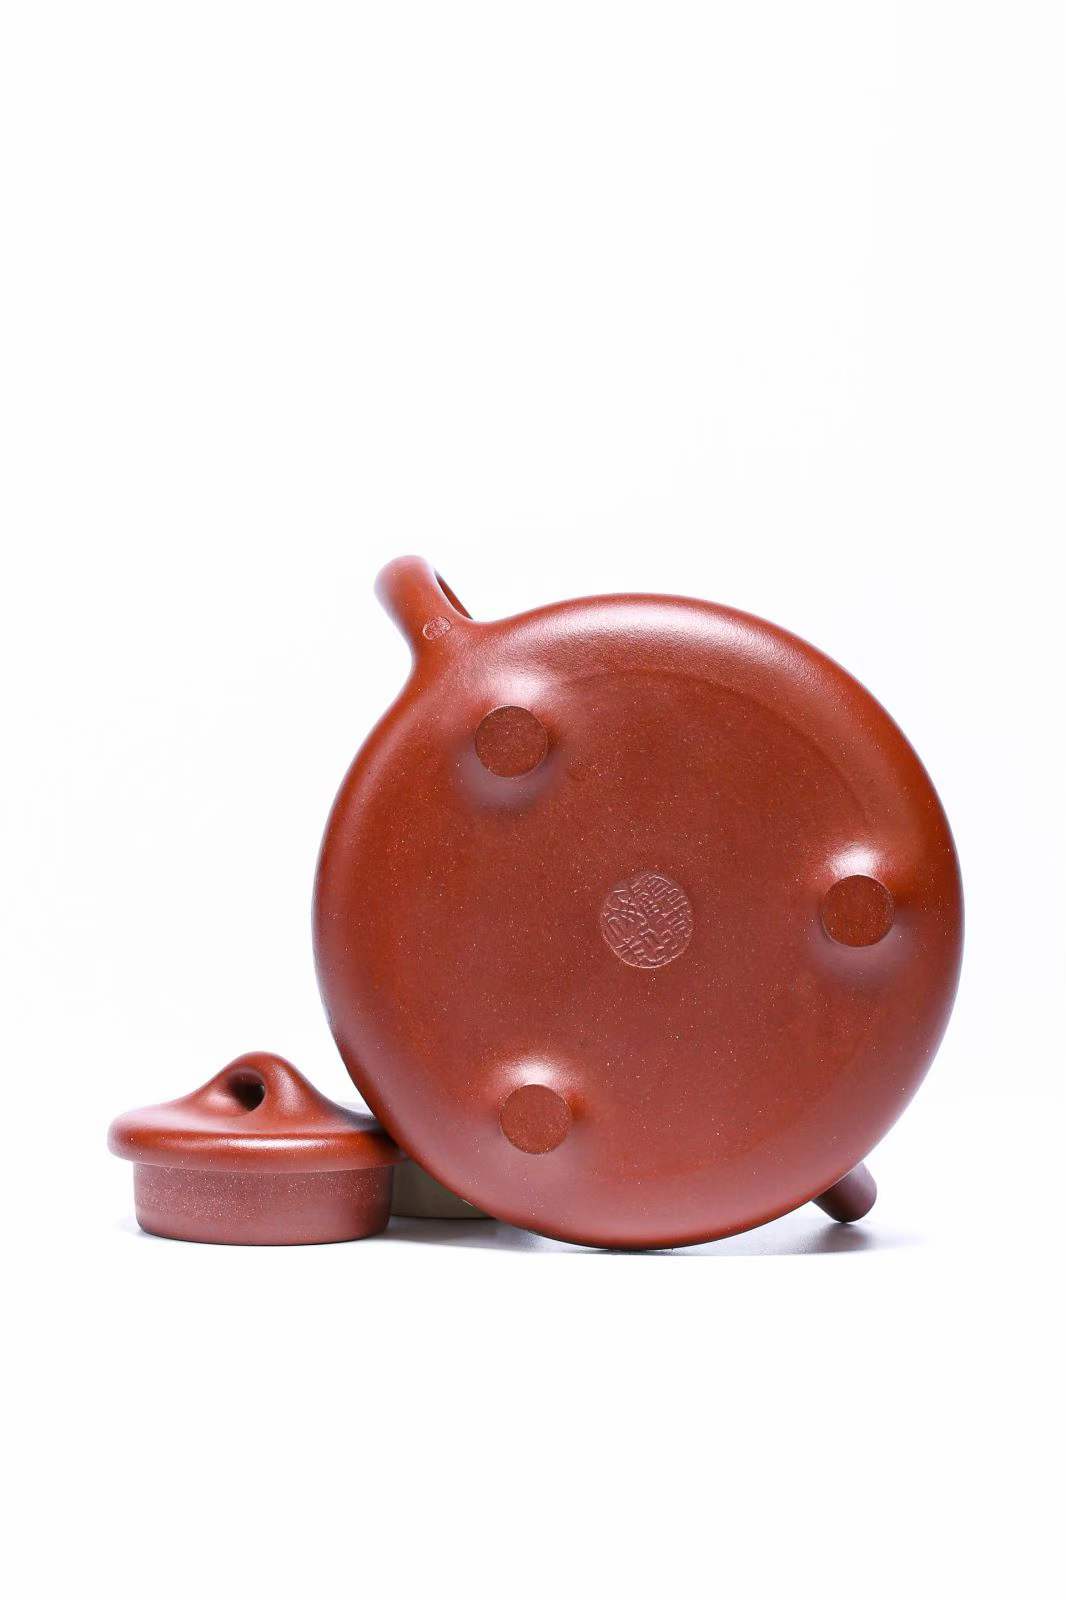 [Collection grade] Zisha teapot with bottom slot Qingziye stone scoop